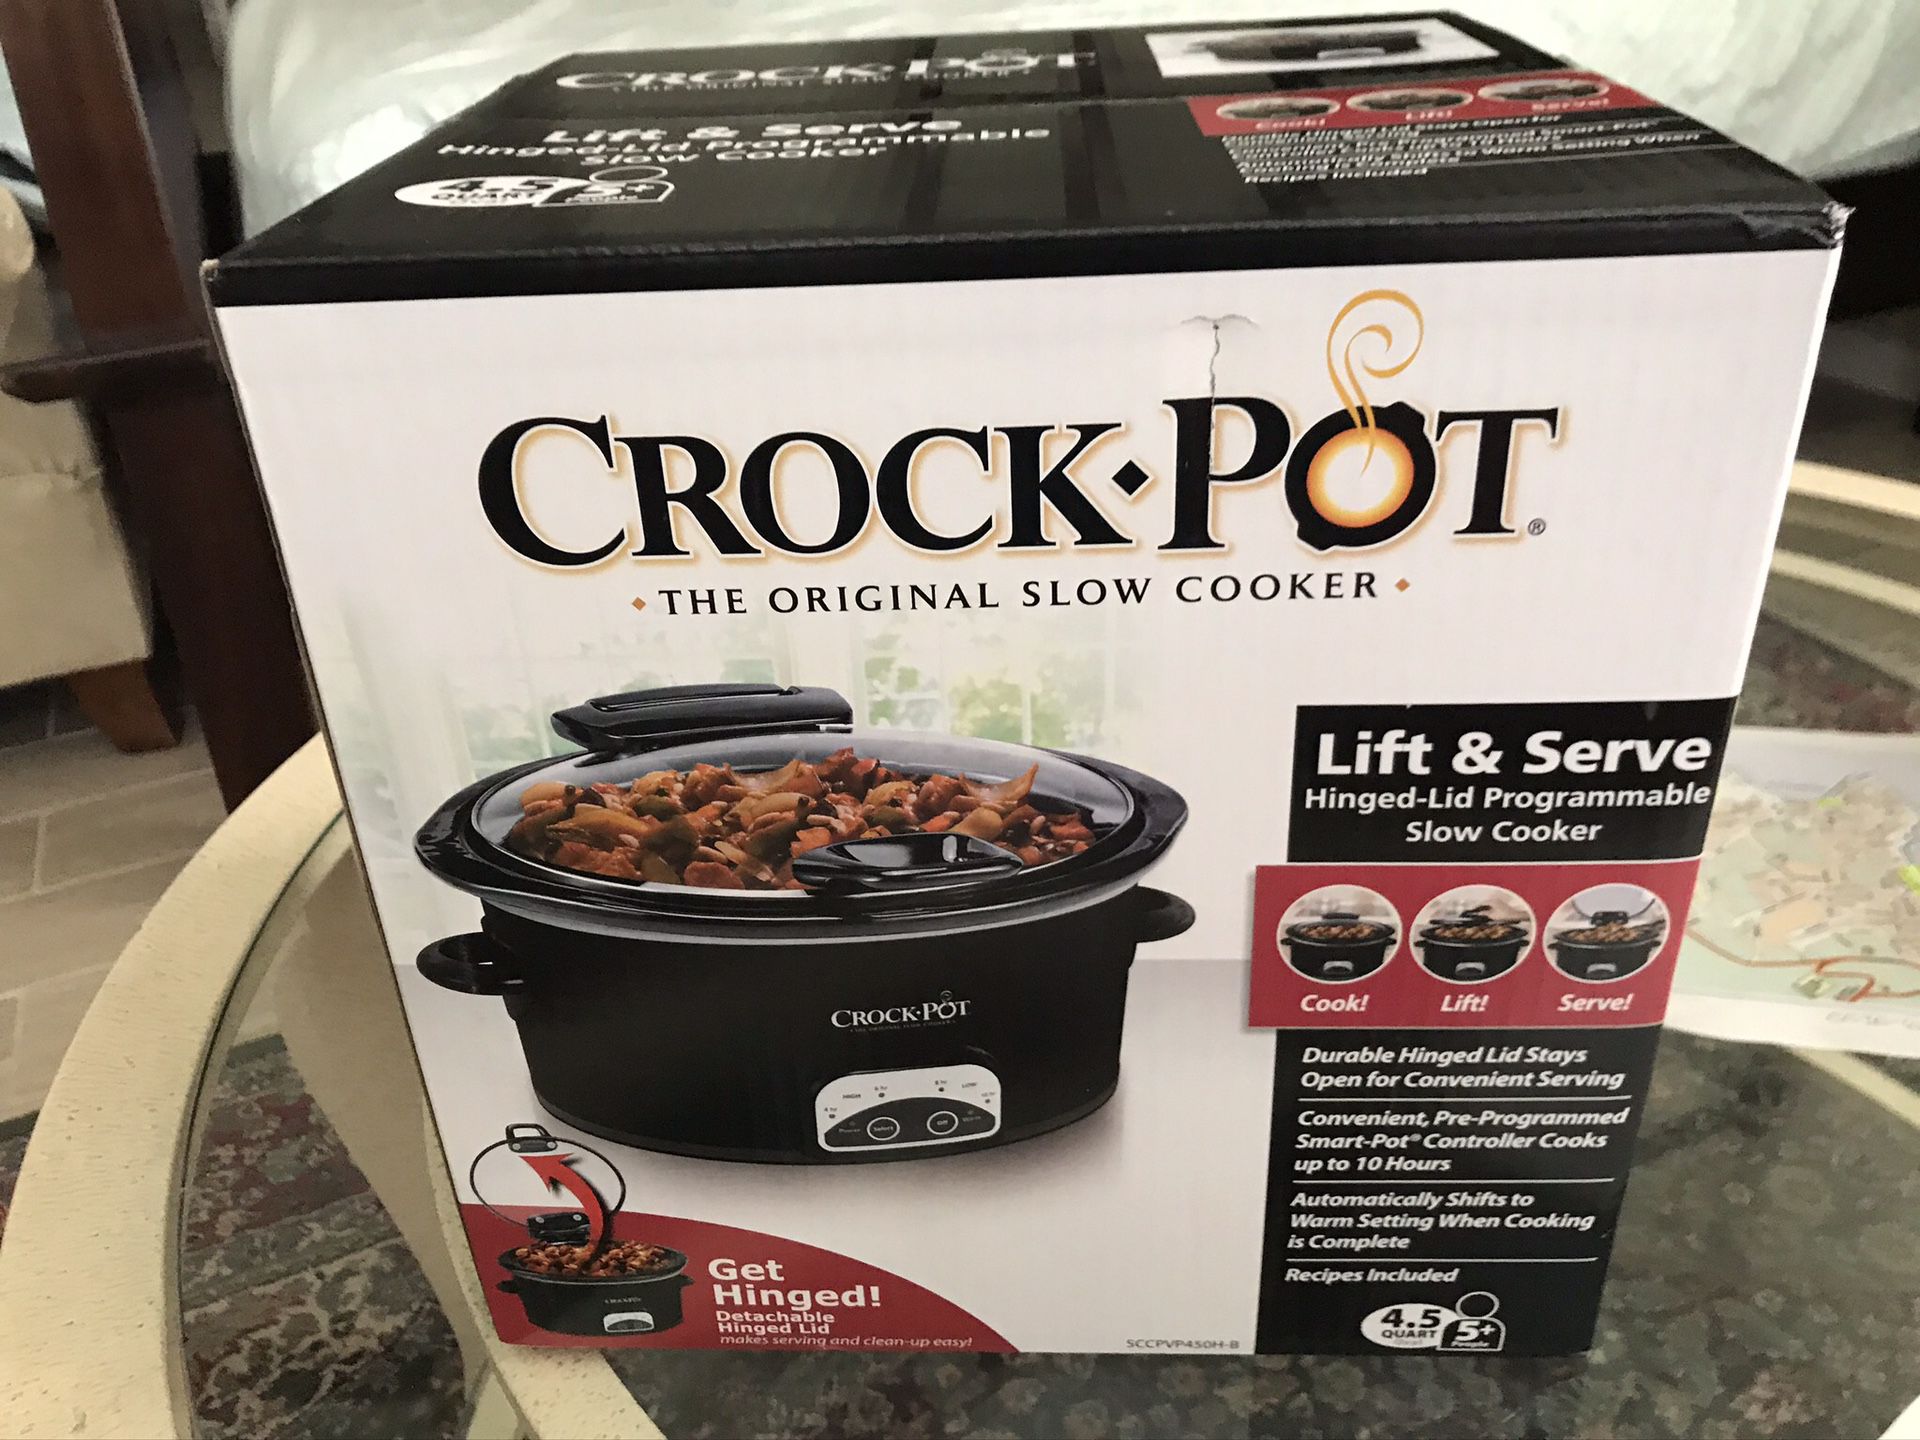 Crock Pot 4.5 qt